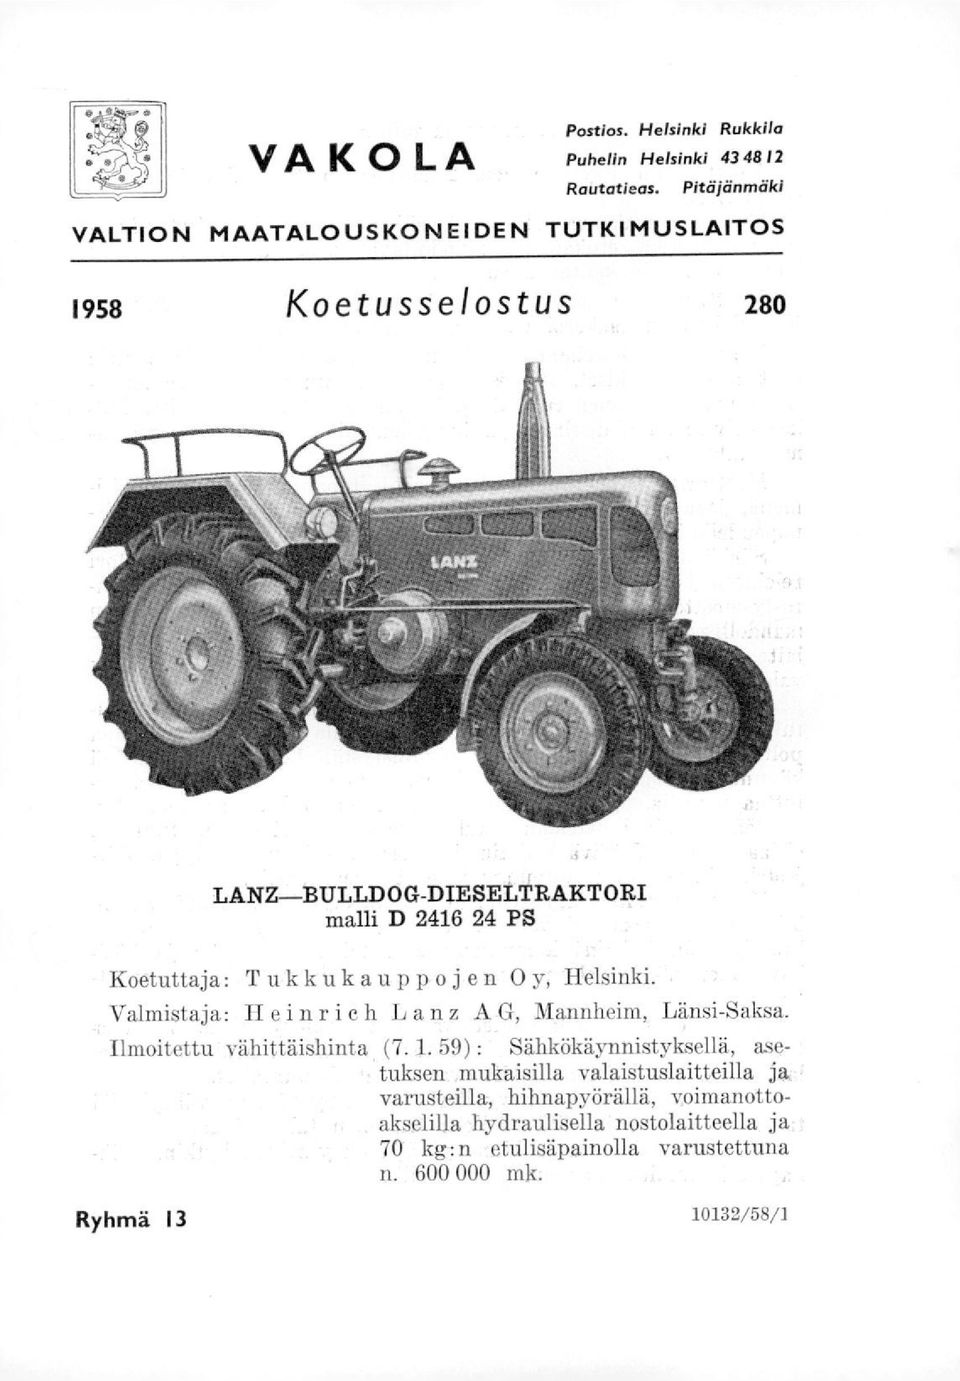 Koetuttaja: Tukkukauppojen Oy, Helsinki. Valmistaja: Heinrich Lanz A G, Mannheim, Länsi-Saksa. Ilmoitettu vähittäishinta (7.1.